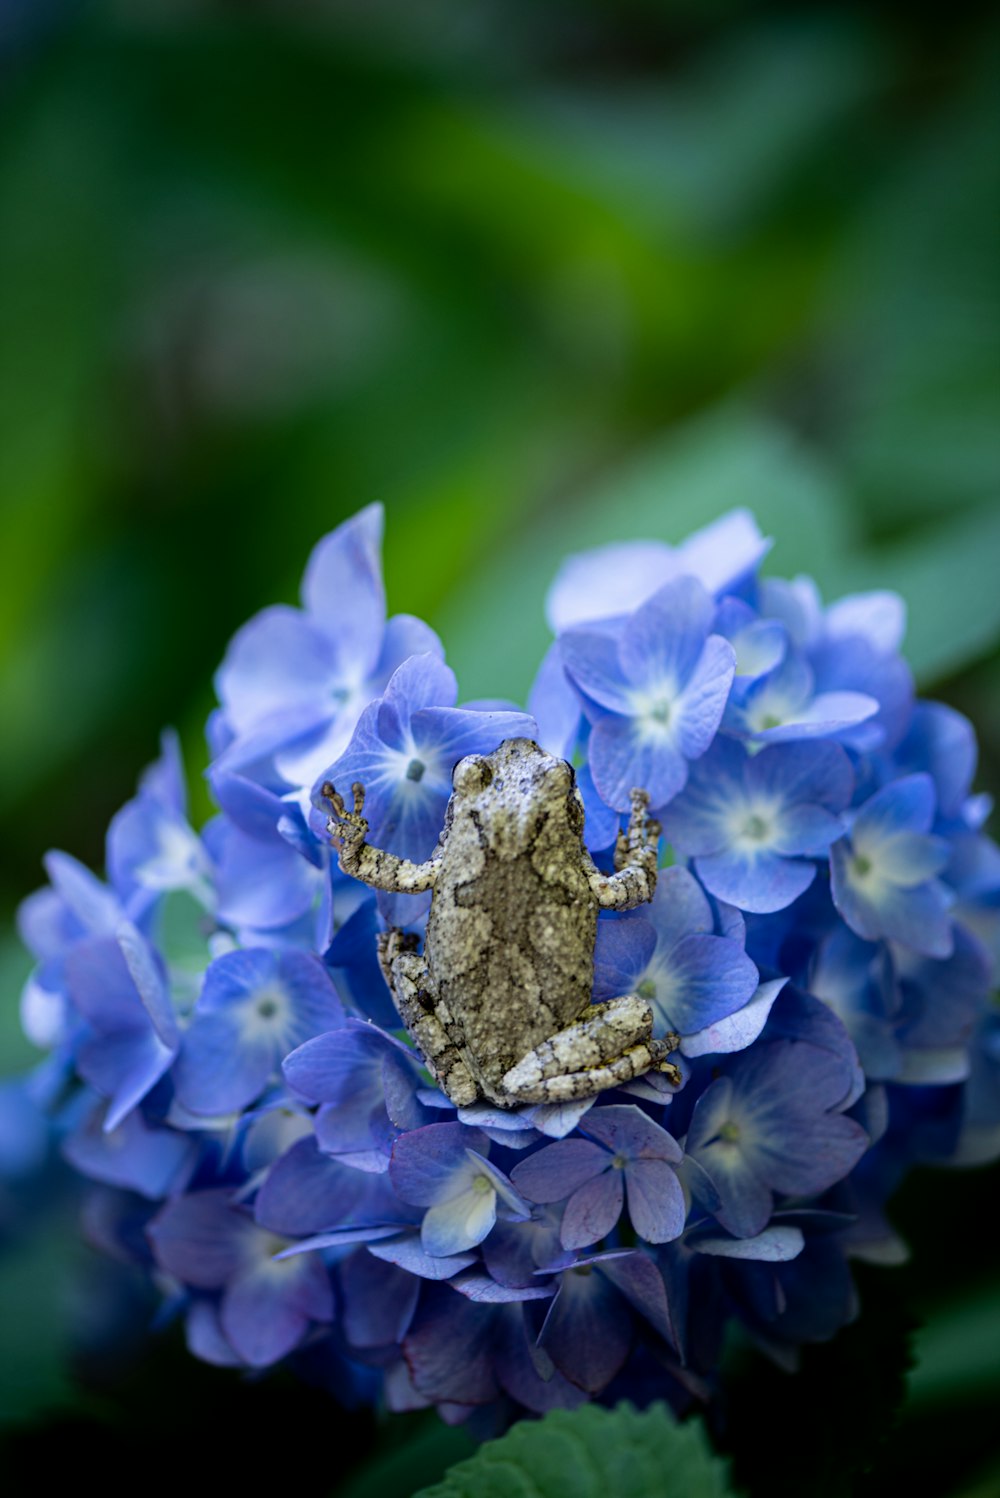 파란 꽃 위에 앉아 있는 개구리